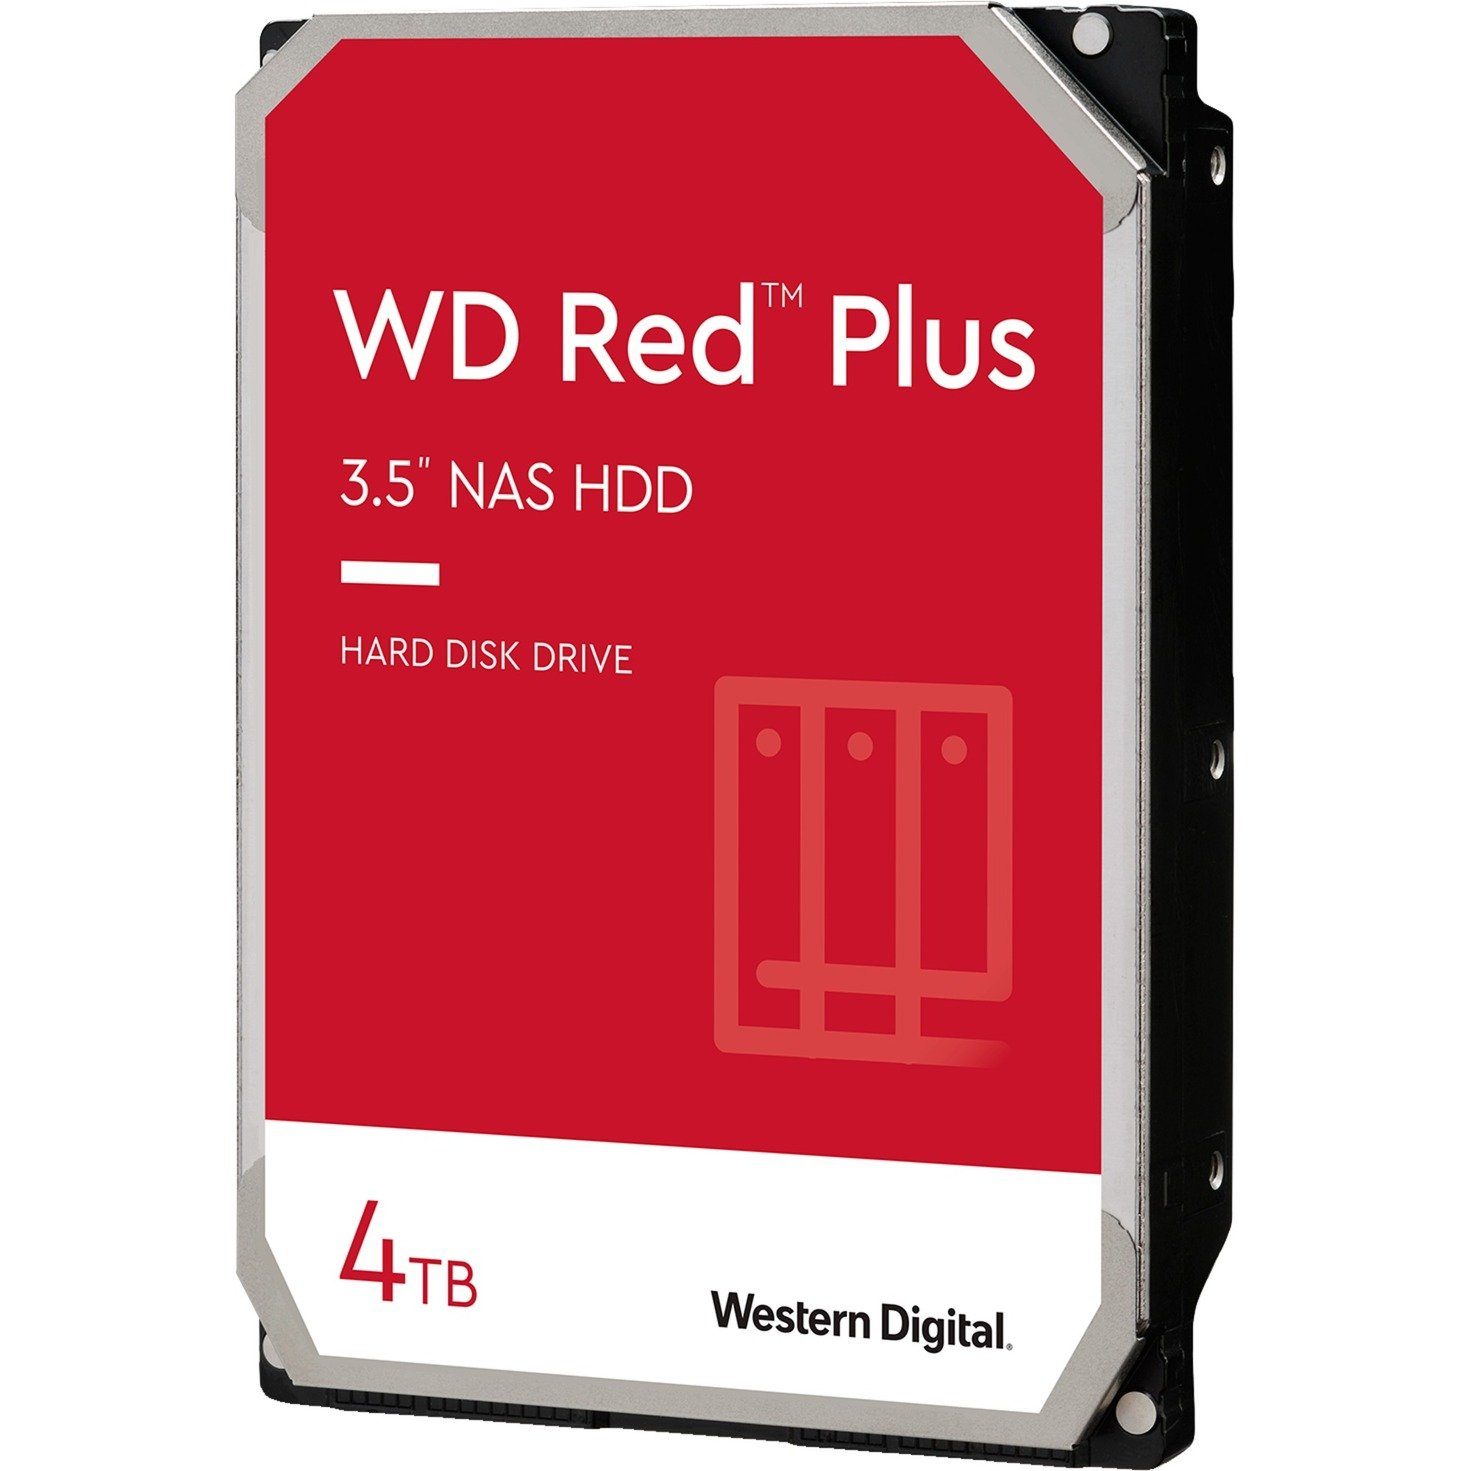 Western Digital WD Red 3,5" (4TB) Plus HDD-NAS-Festplatte 4TB